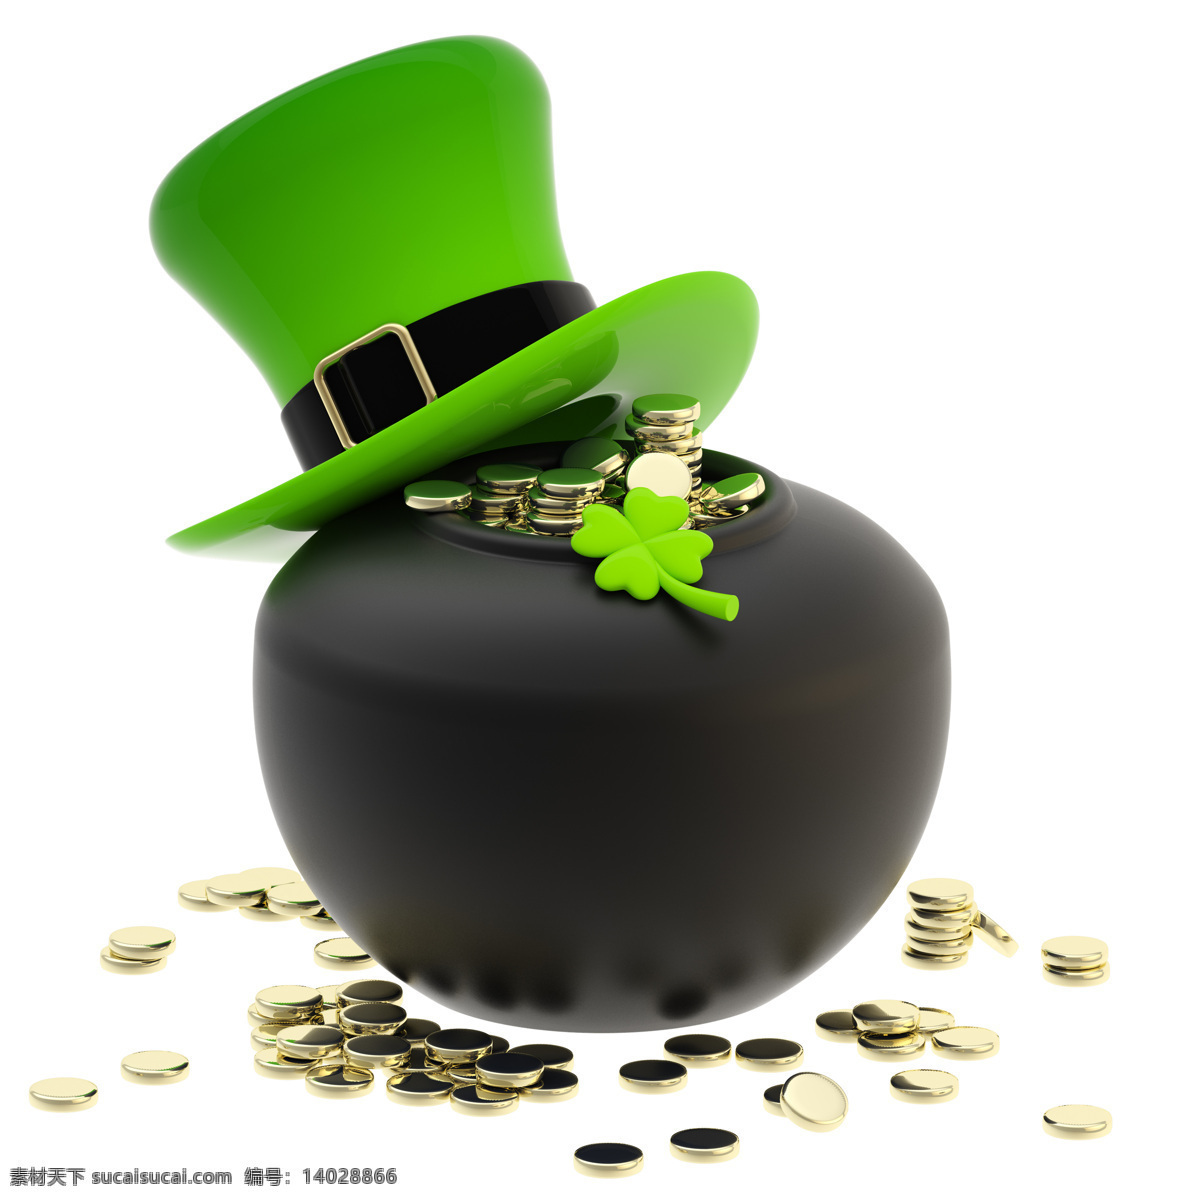 罐子 帽子 硬币 钱币 绿色 圣派翠克节 节日素材 节日庆典 生活百科